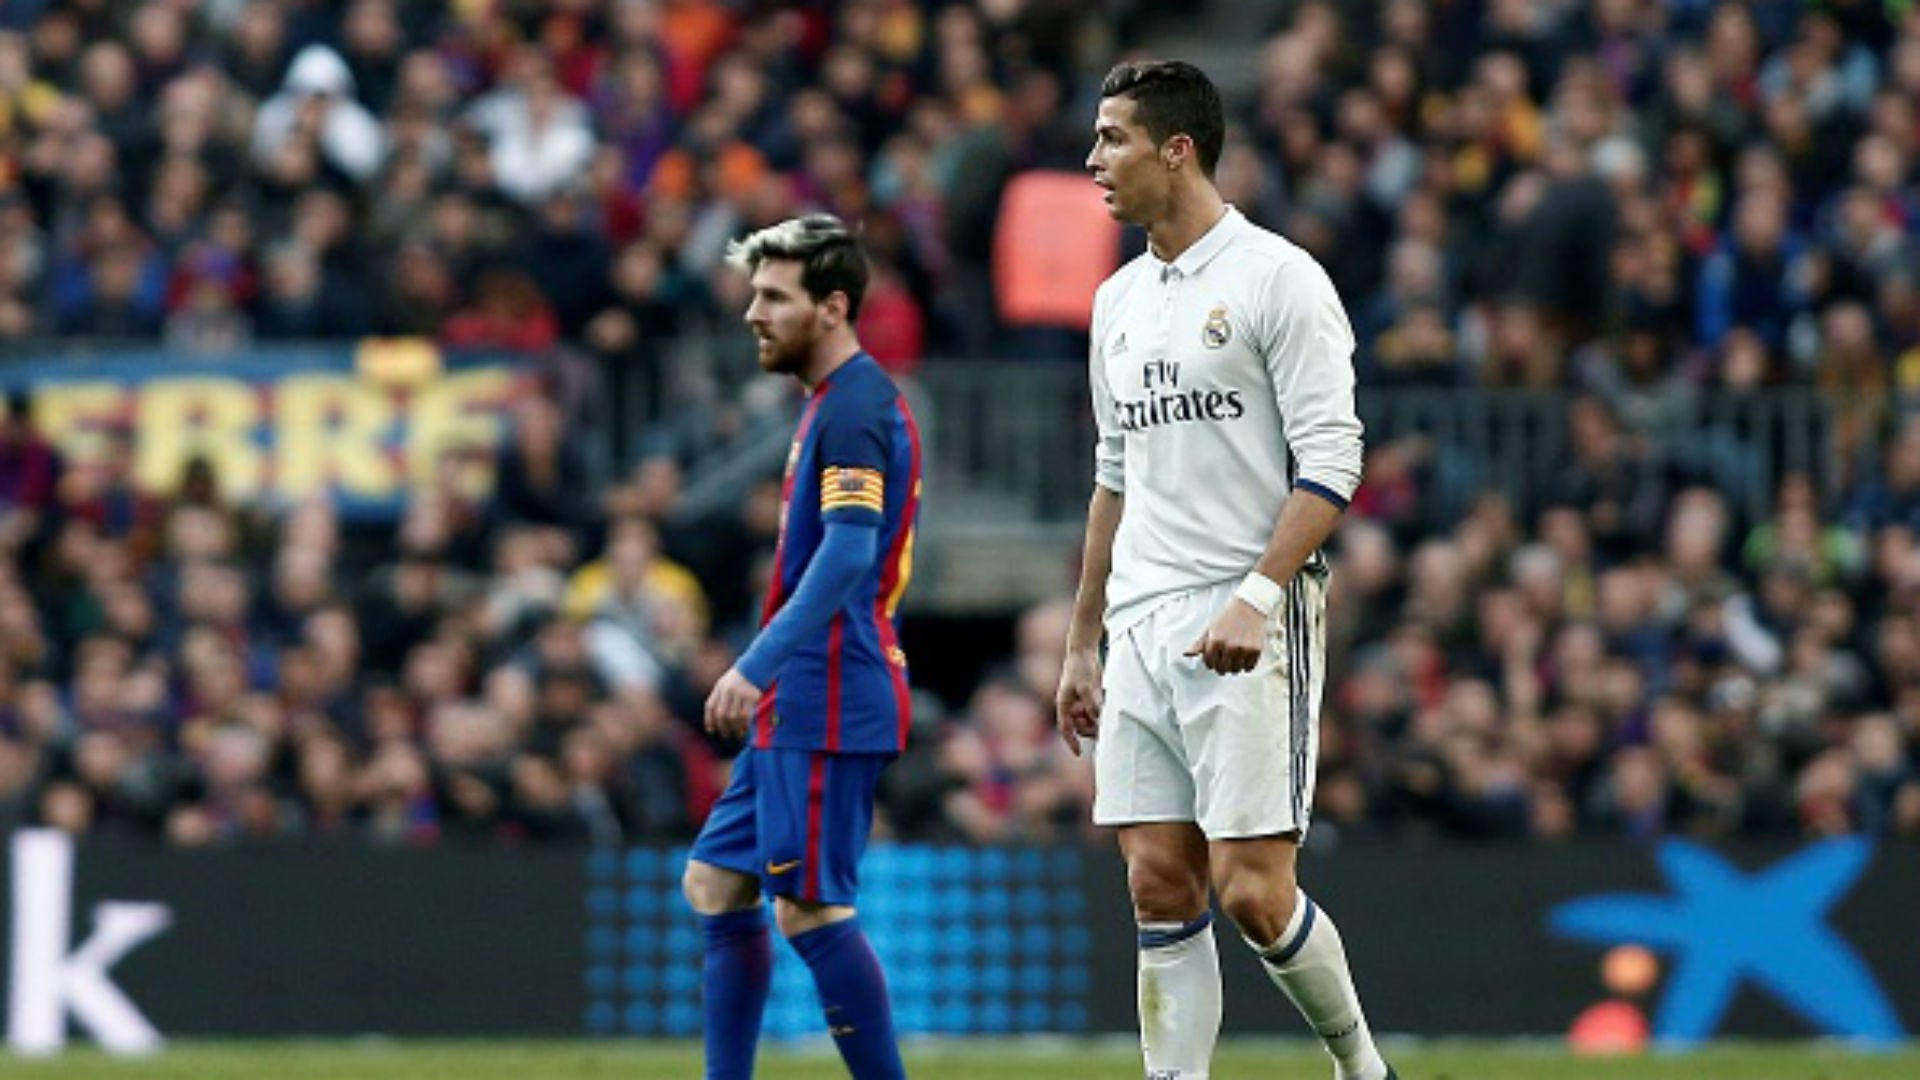 Carles Puyol, Ronaldo, Messi - Đây là hình ảnh đầy cảm xúc của Carles Puyol, Ronaldo và Messi. Hãy nhìn vào hình ảnh này để cảm nhận họ đã làm gì với bóng đá, đồng thời tôn vinh những khoảnh khắc đáng nhớ trong sự nghiệp của họ.